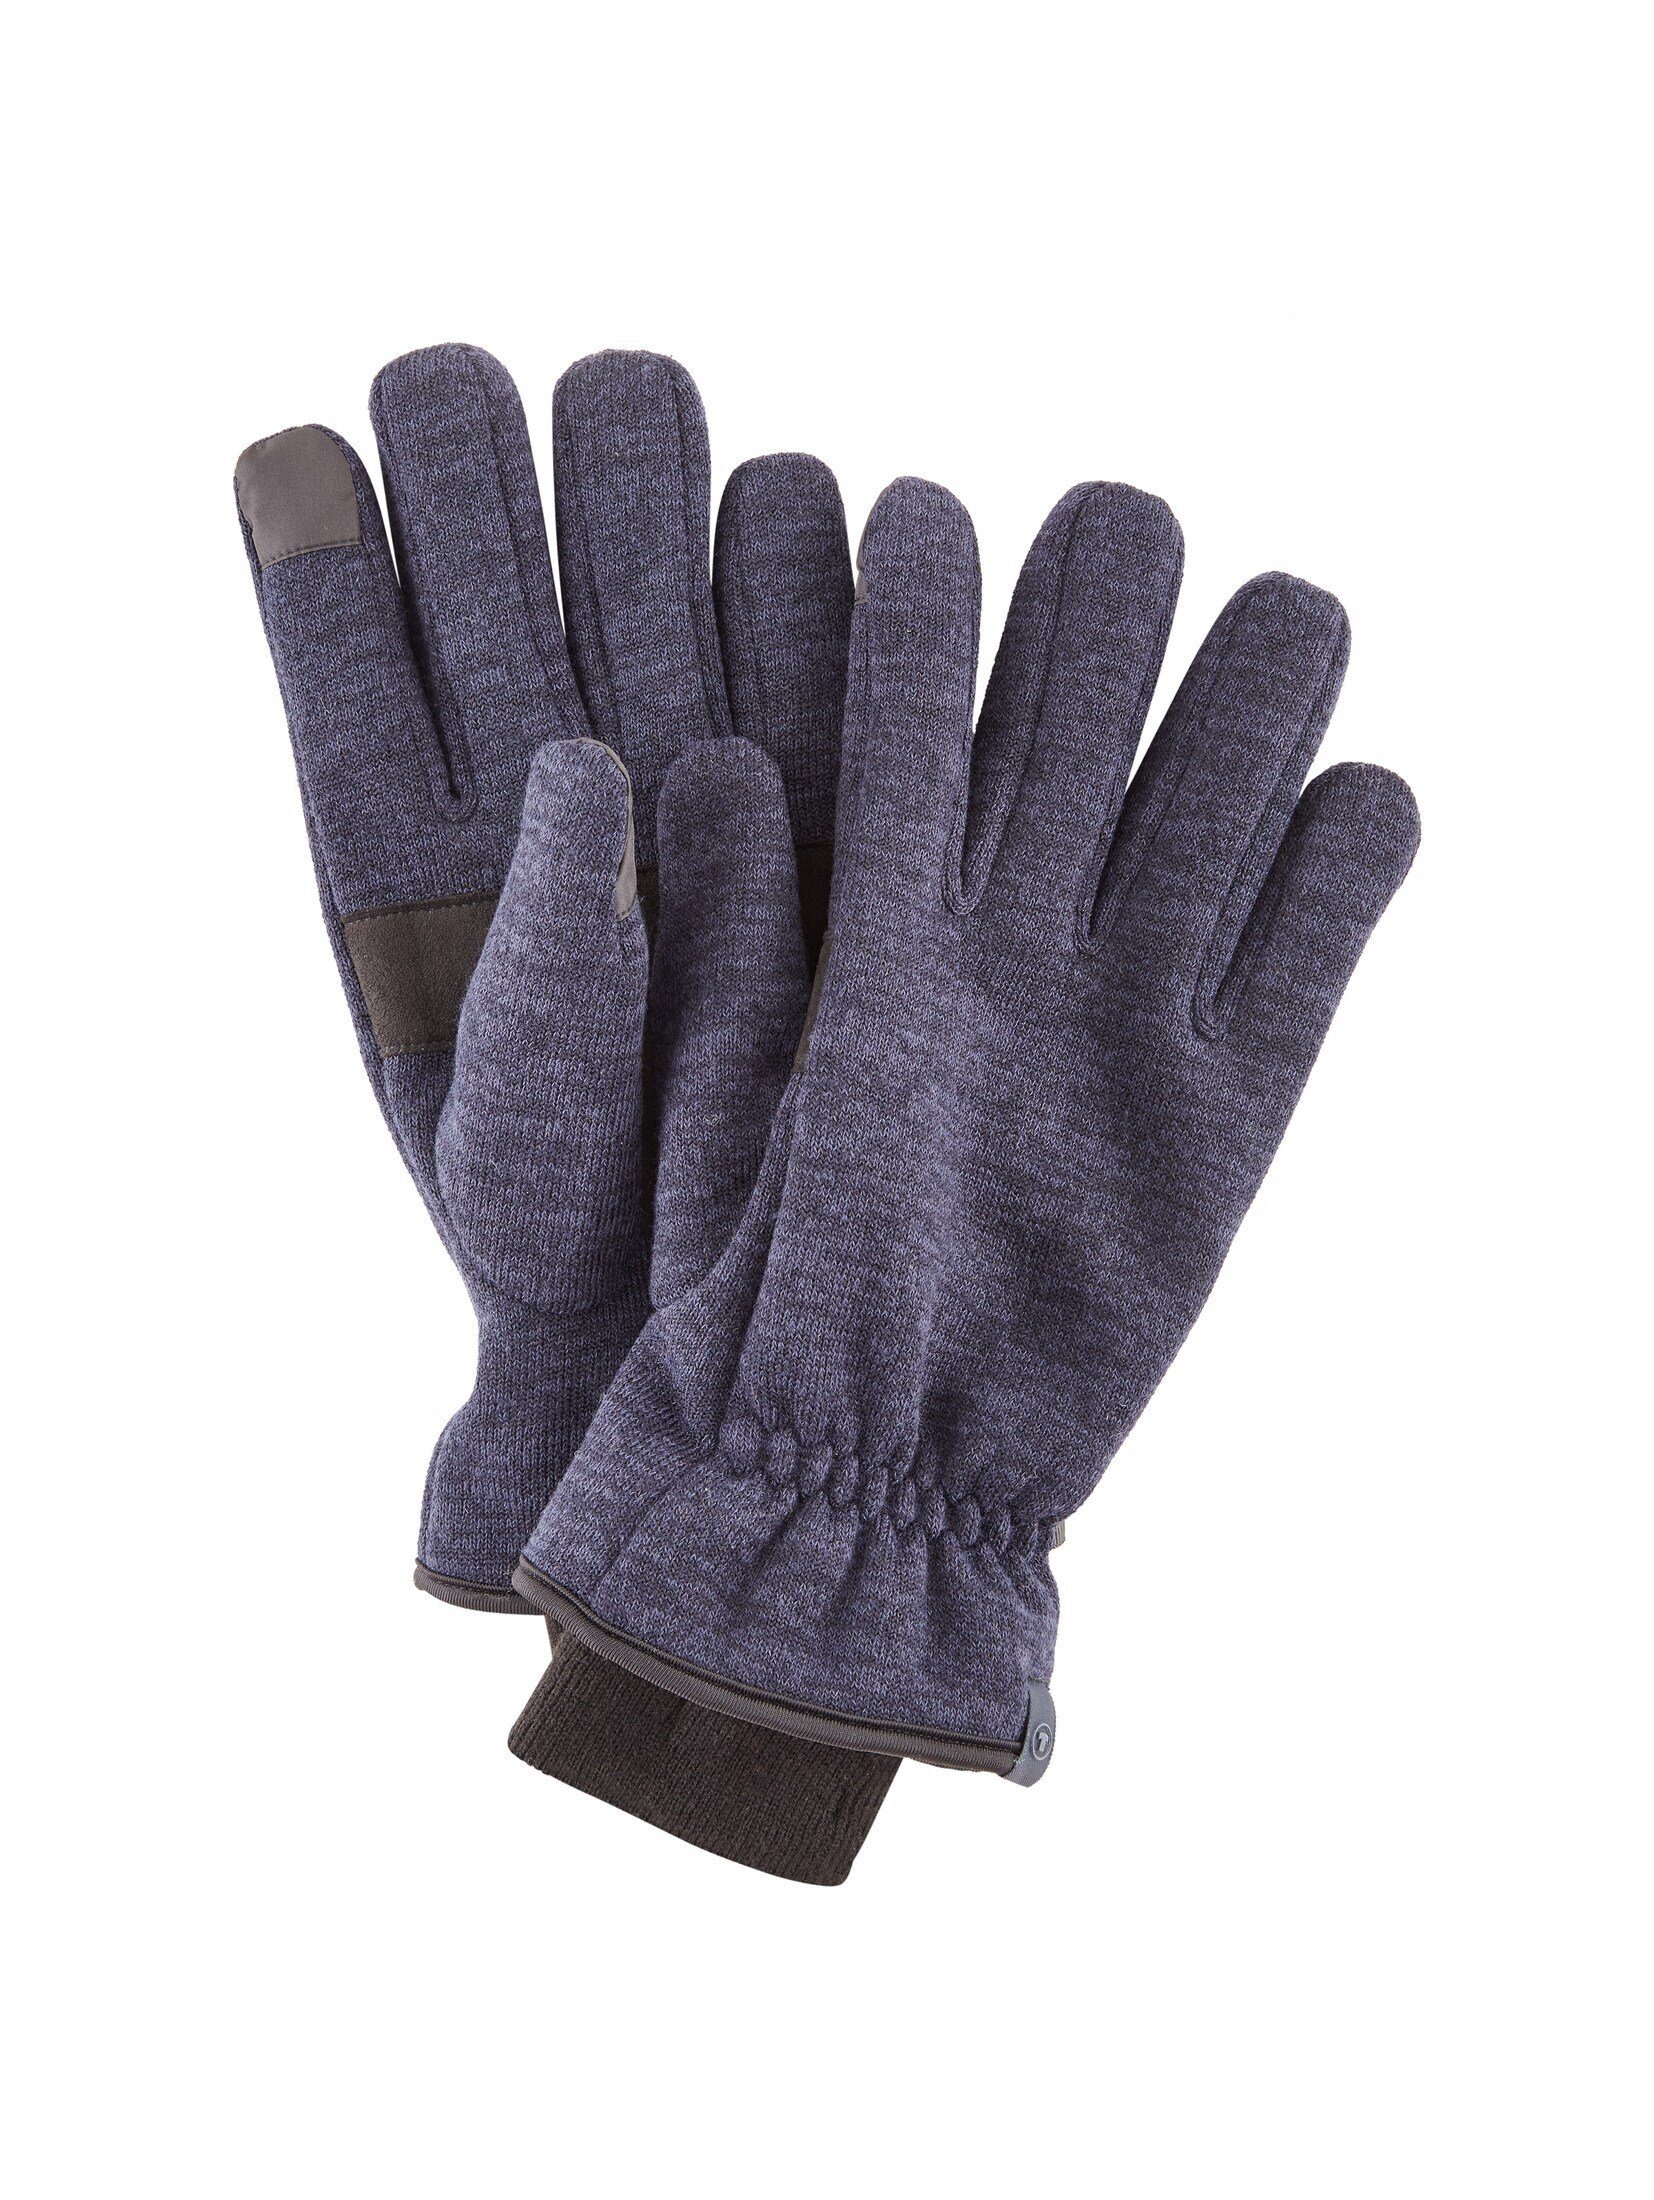 TOM TAILOR Lederhandschuhe Handschuhe in Melange Optik Knitted Navy Melange